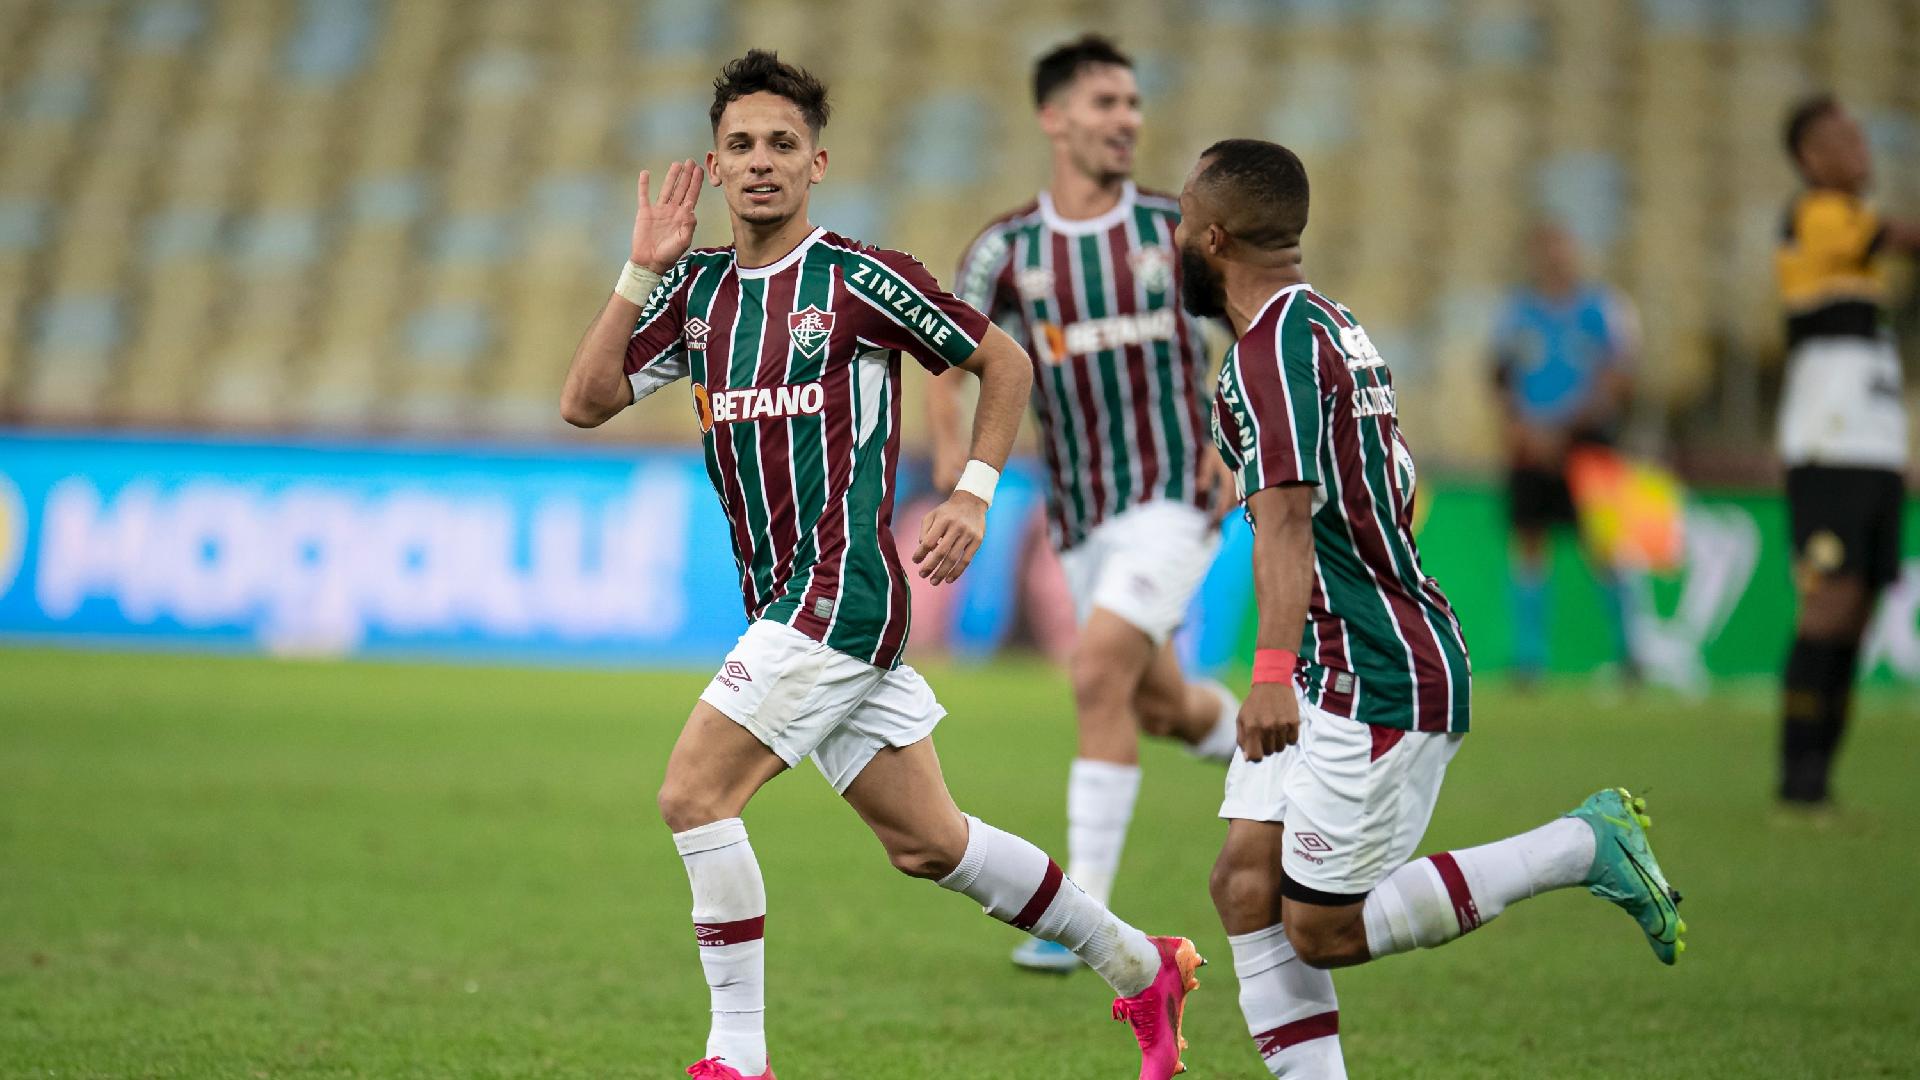 Gabriel Teixeira comemora seu gol diante do Criciúma, em vitória do Fluminense por 3 a 0 na Copa do Brasil